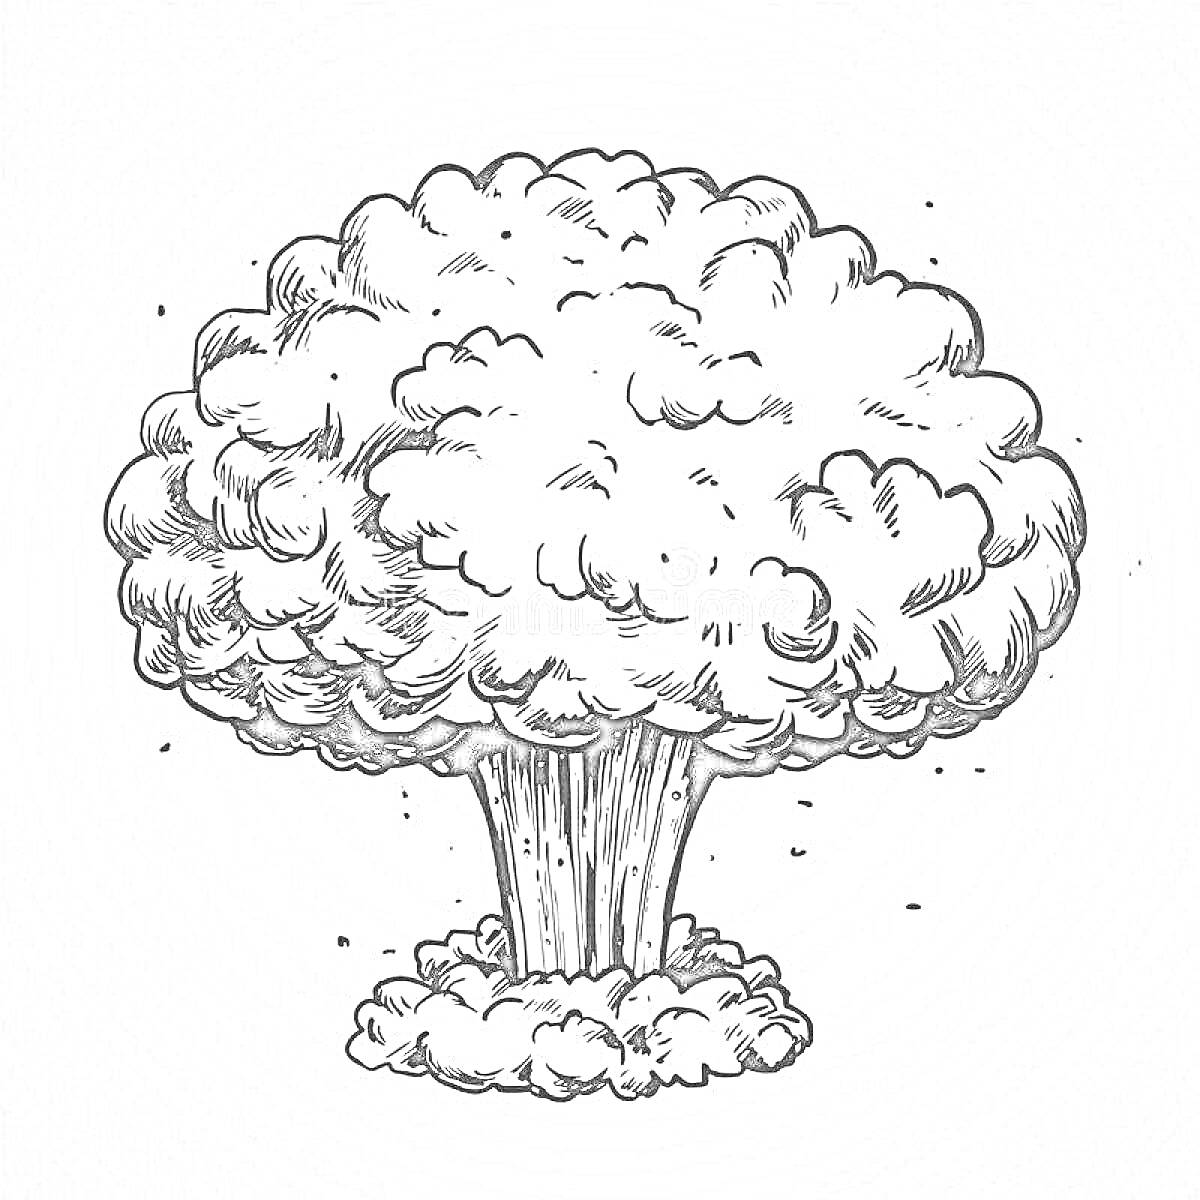 Раскраска Взрыв атомной бомбы с грибовидным облаком